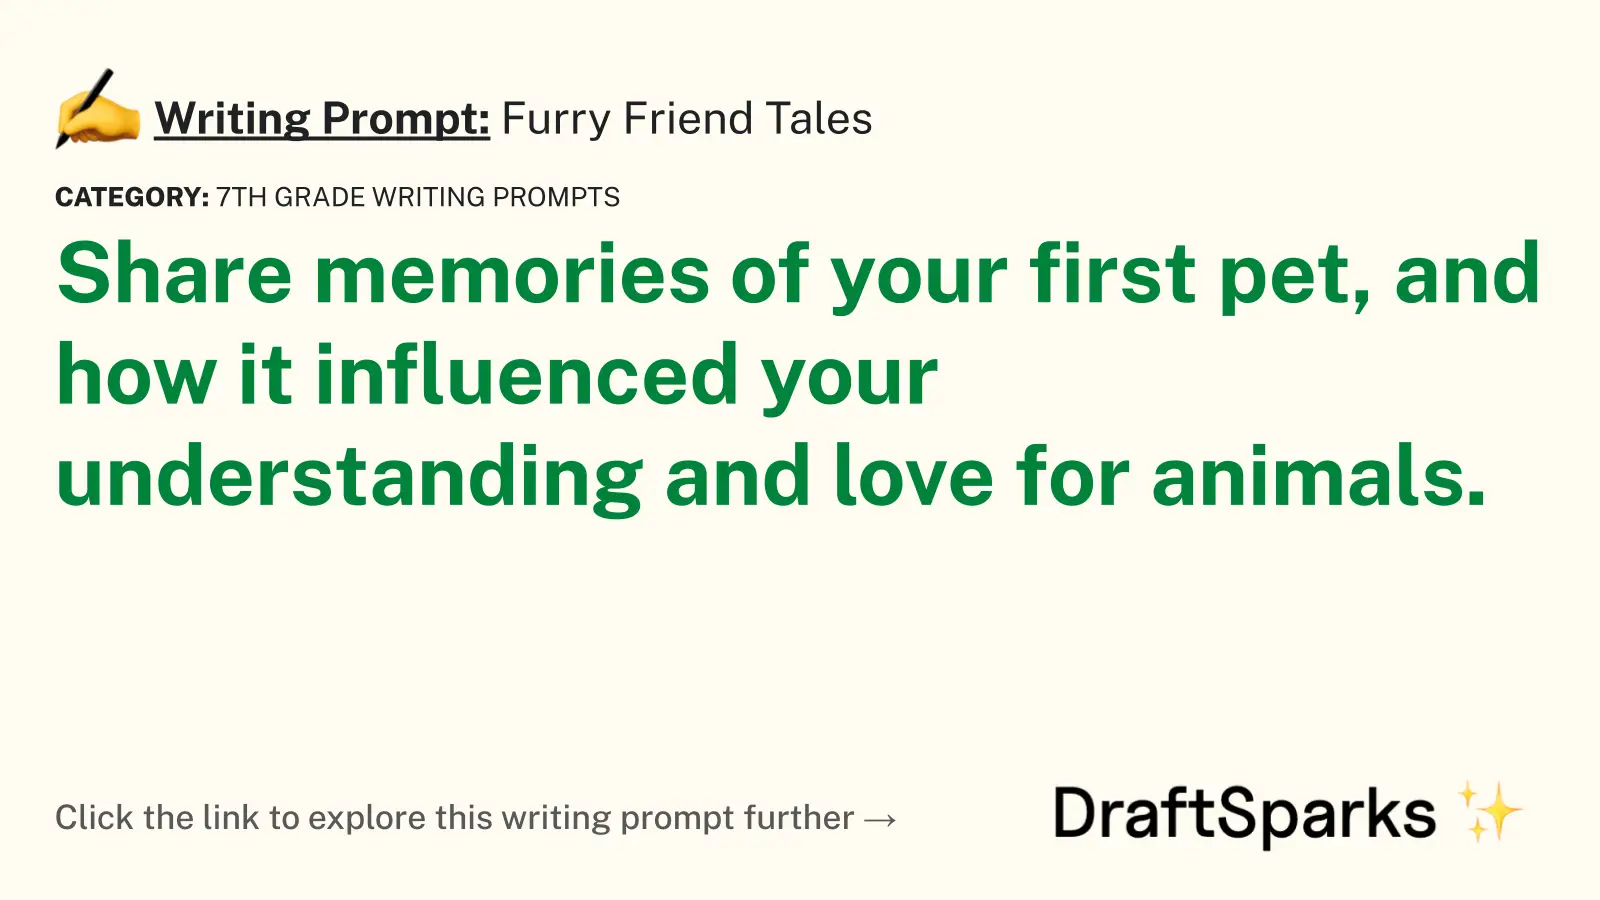 Furry Friend Tales